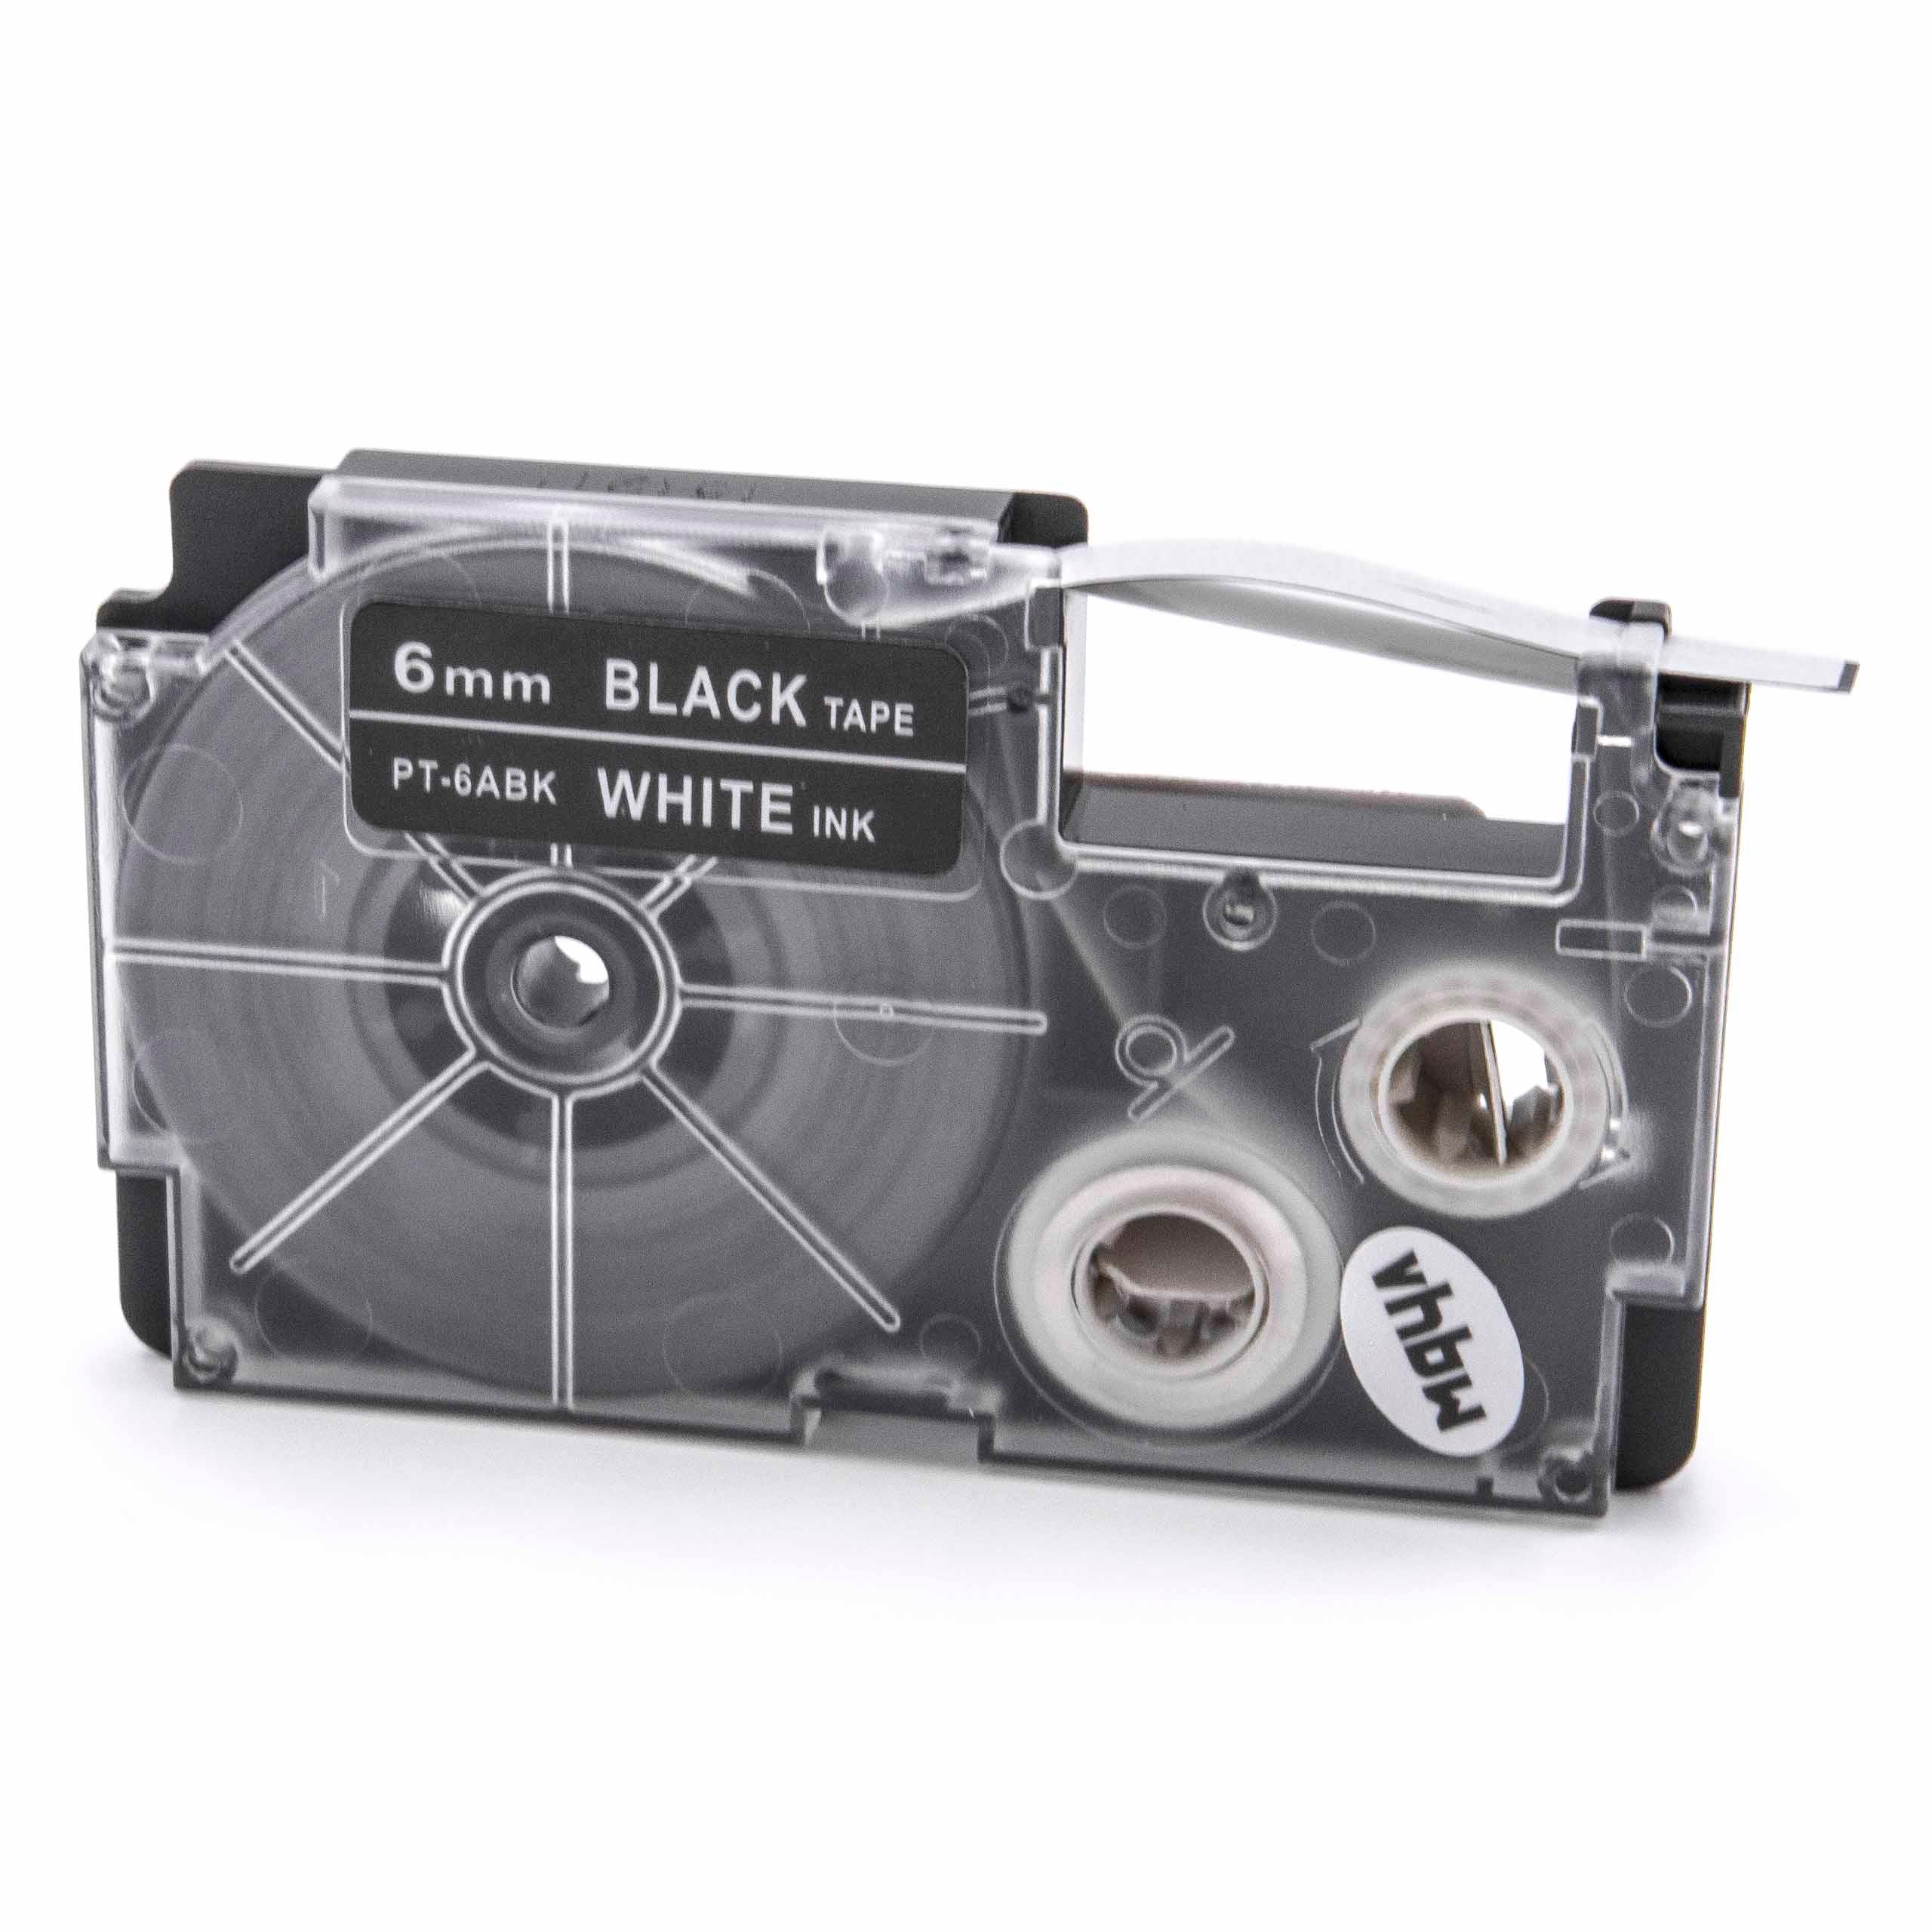 Cassetta nastro sostituisce Casio XR-6ABK per etichettatrice Casio 6mm bianco su nero